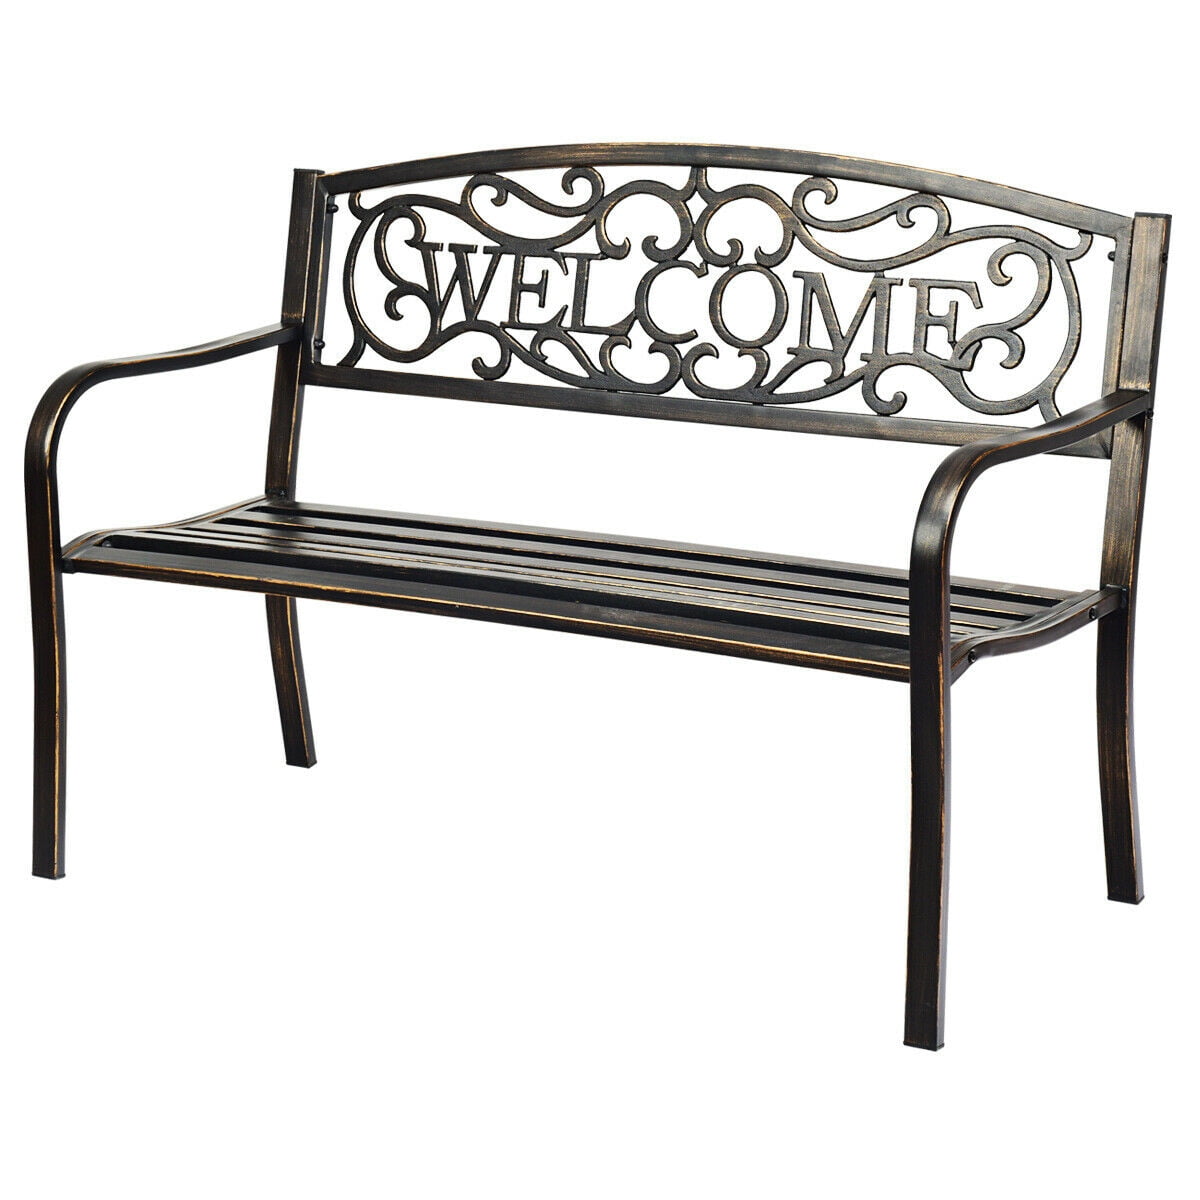 50" Patio Garden Bench Park Yard Outdoor Furniture Steel Frame Porch Chair W23 